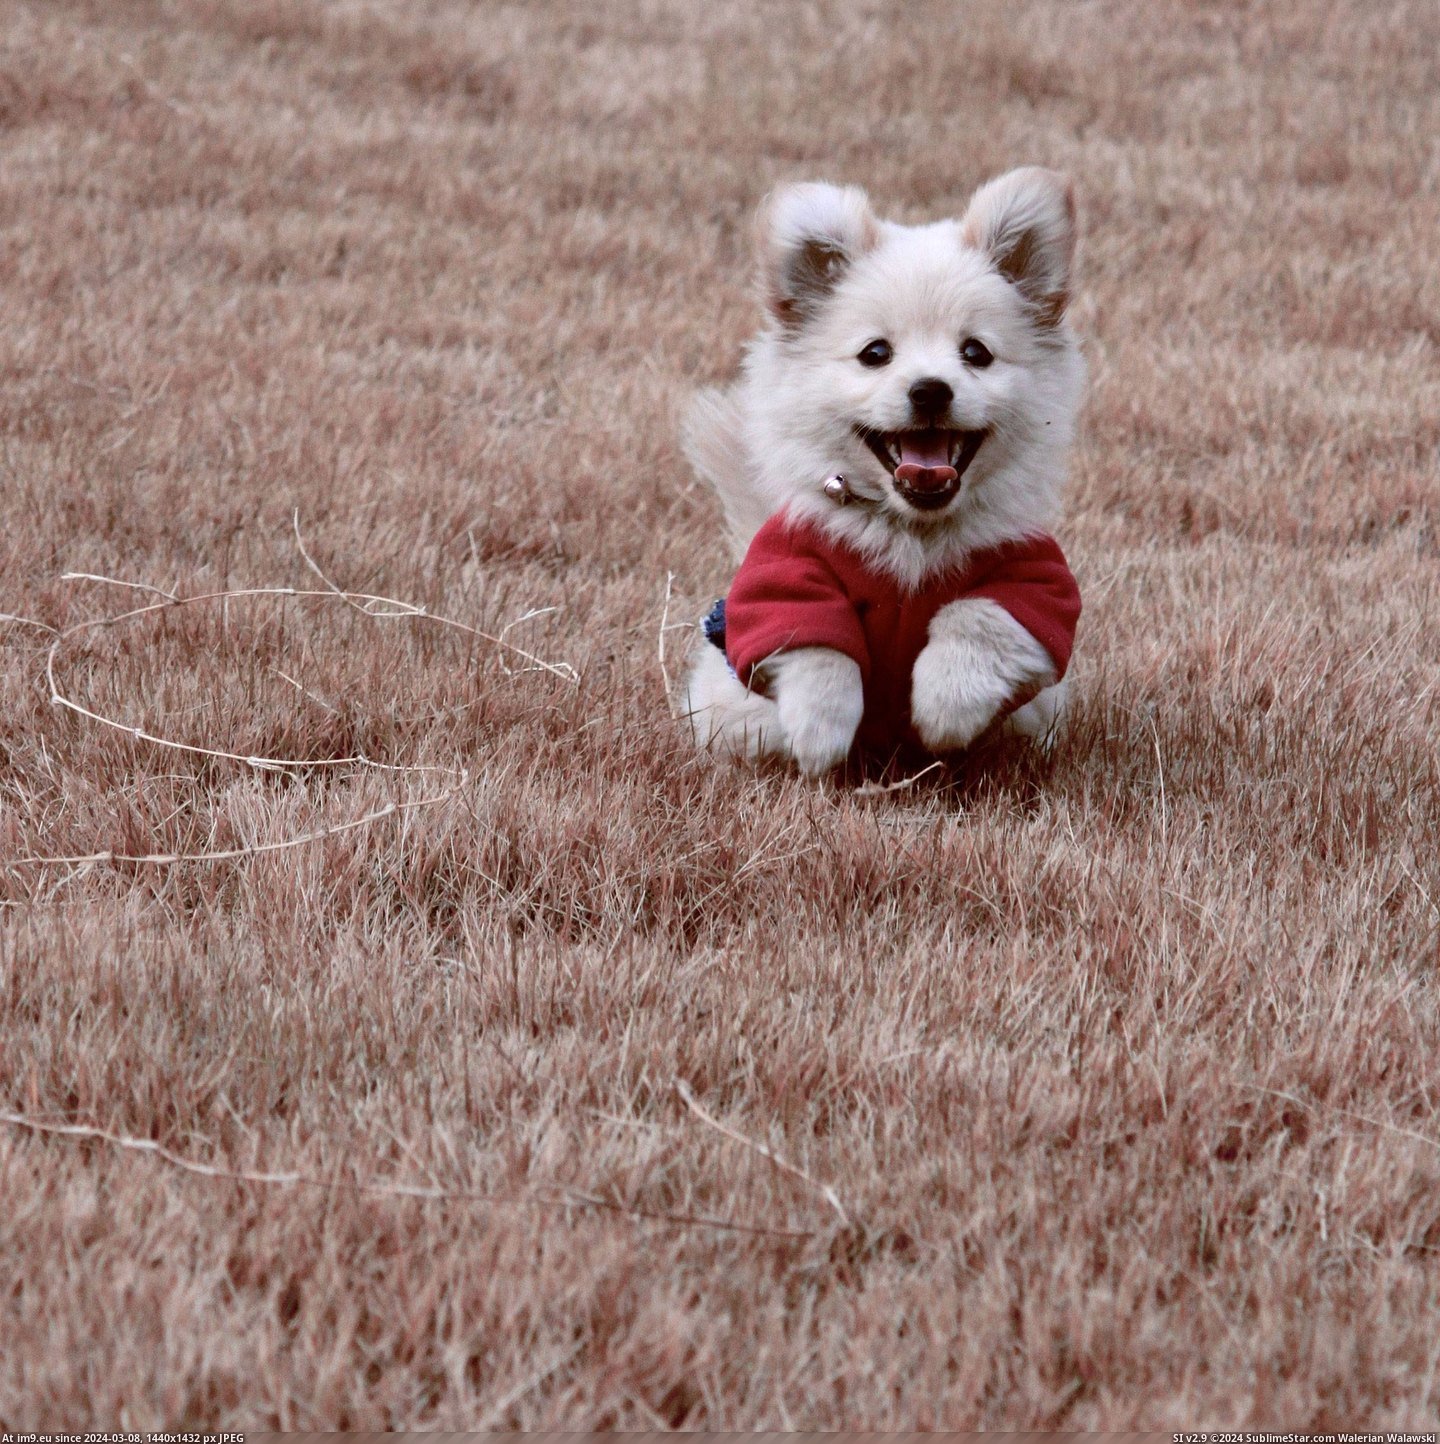 #Happy #Puppy #Friends [Aww] my friends happy little puppy Pic. (Obraz z album My r/AWW favs))